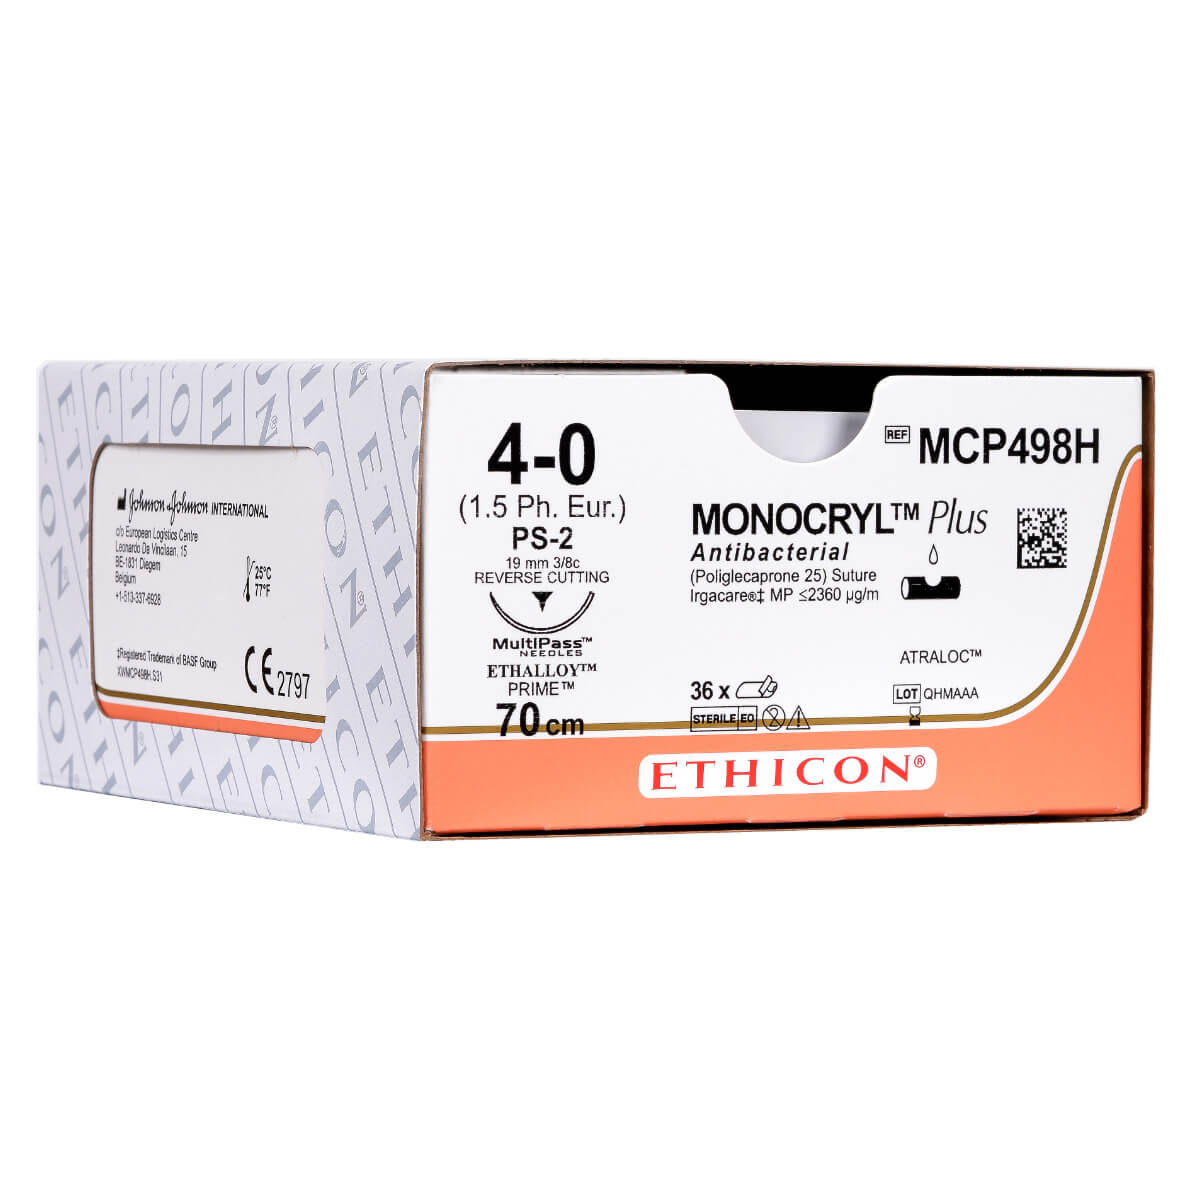 Monocryl Plus 6-0, RB4, violett, monofil, 70cm, 36 Stck., PZN 09999034